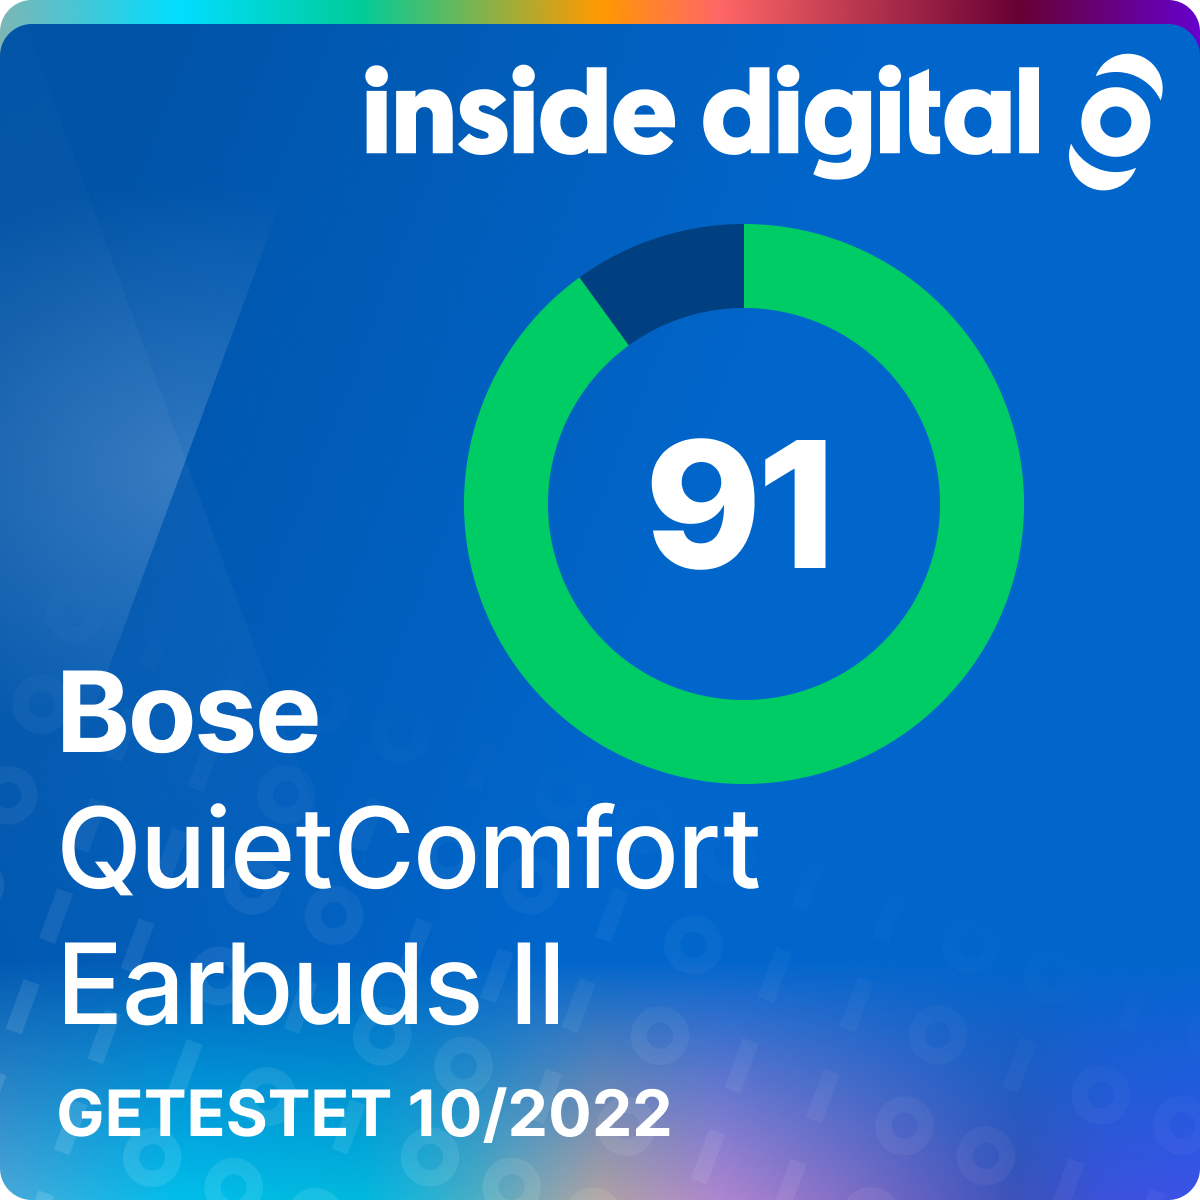 Bose QuietComfort Earbuds II im Test: